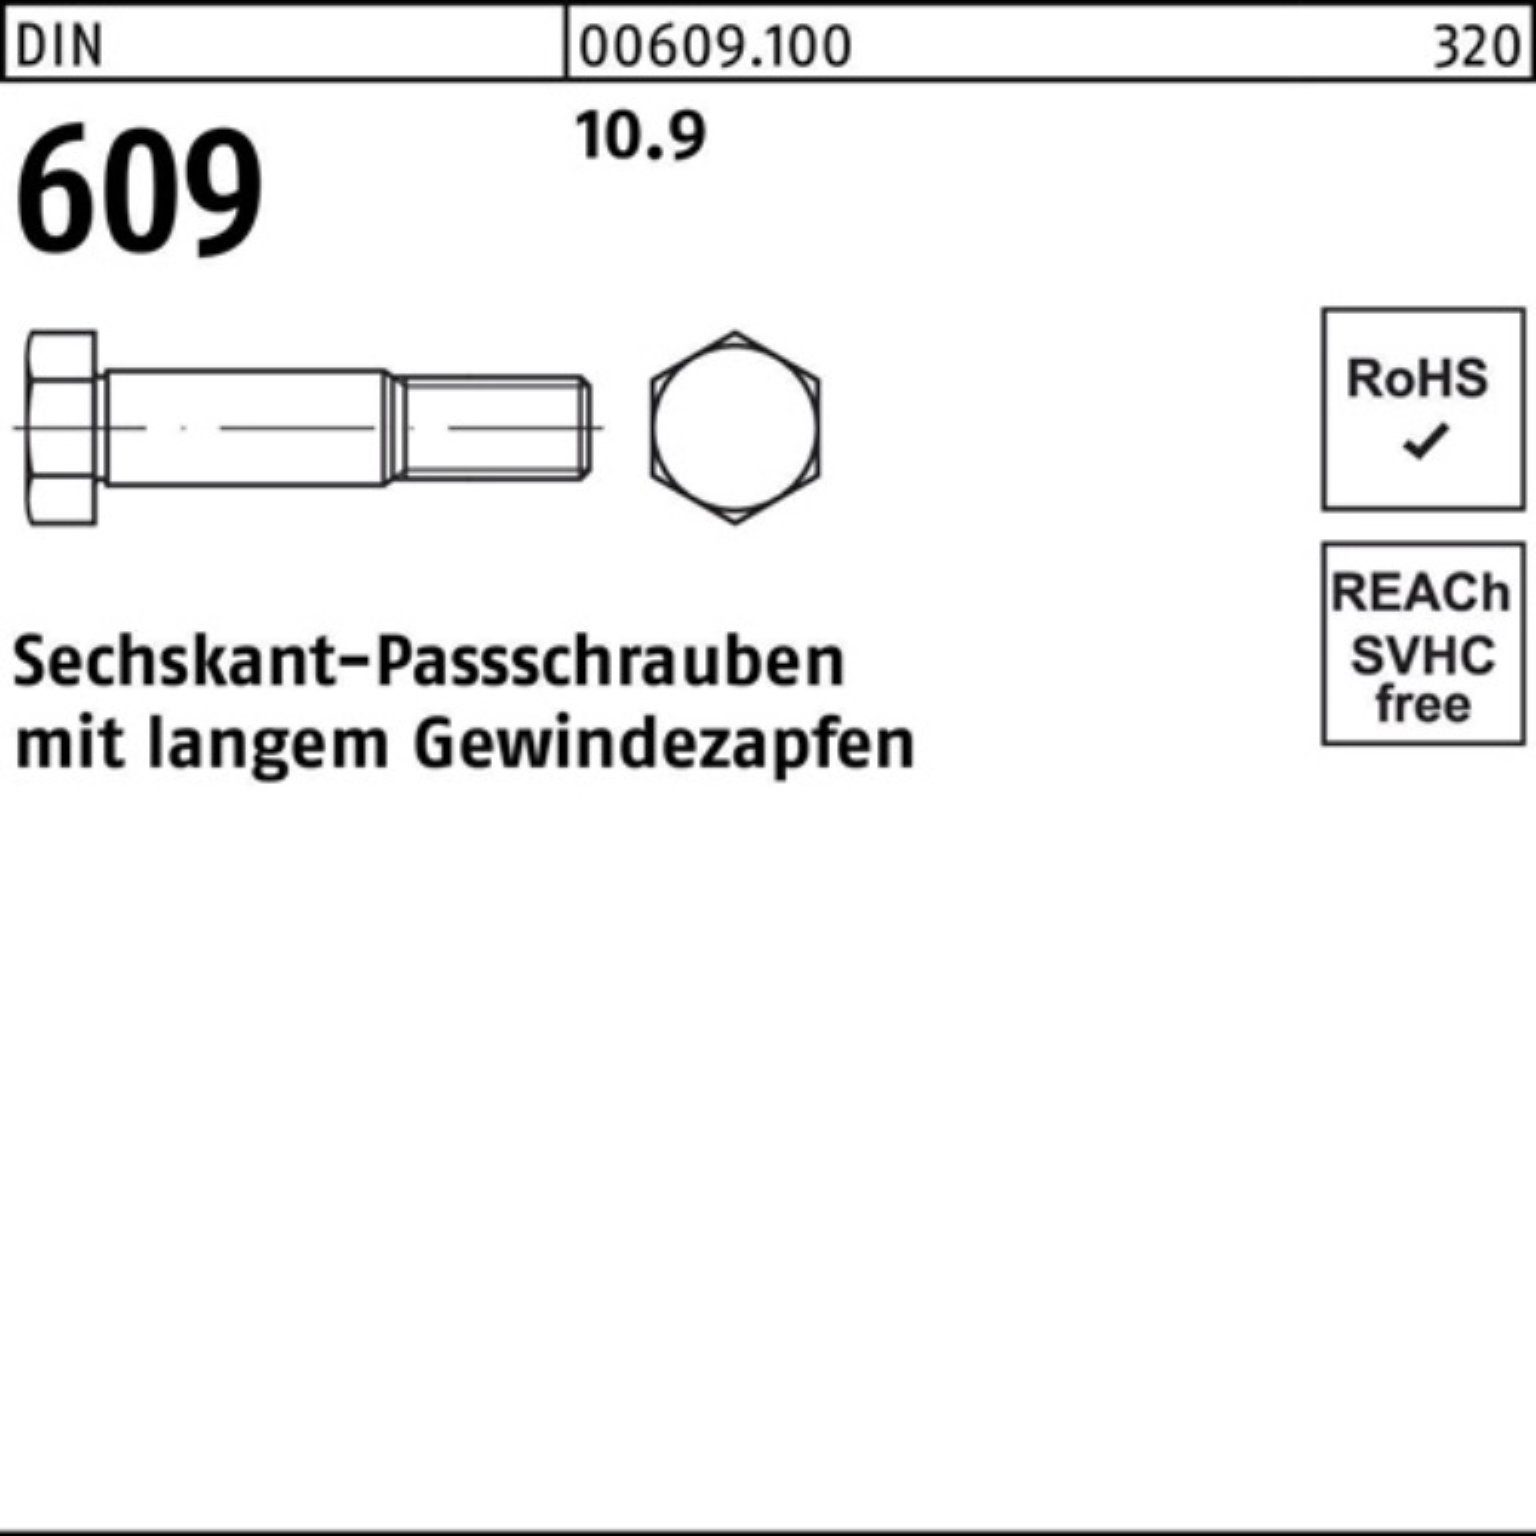 DIN Pack 609 Sechskantpassschraube Reyher 75 100er Schraube langem Gewindezapfen M24x